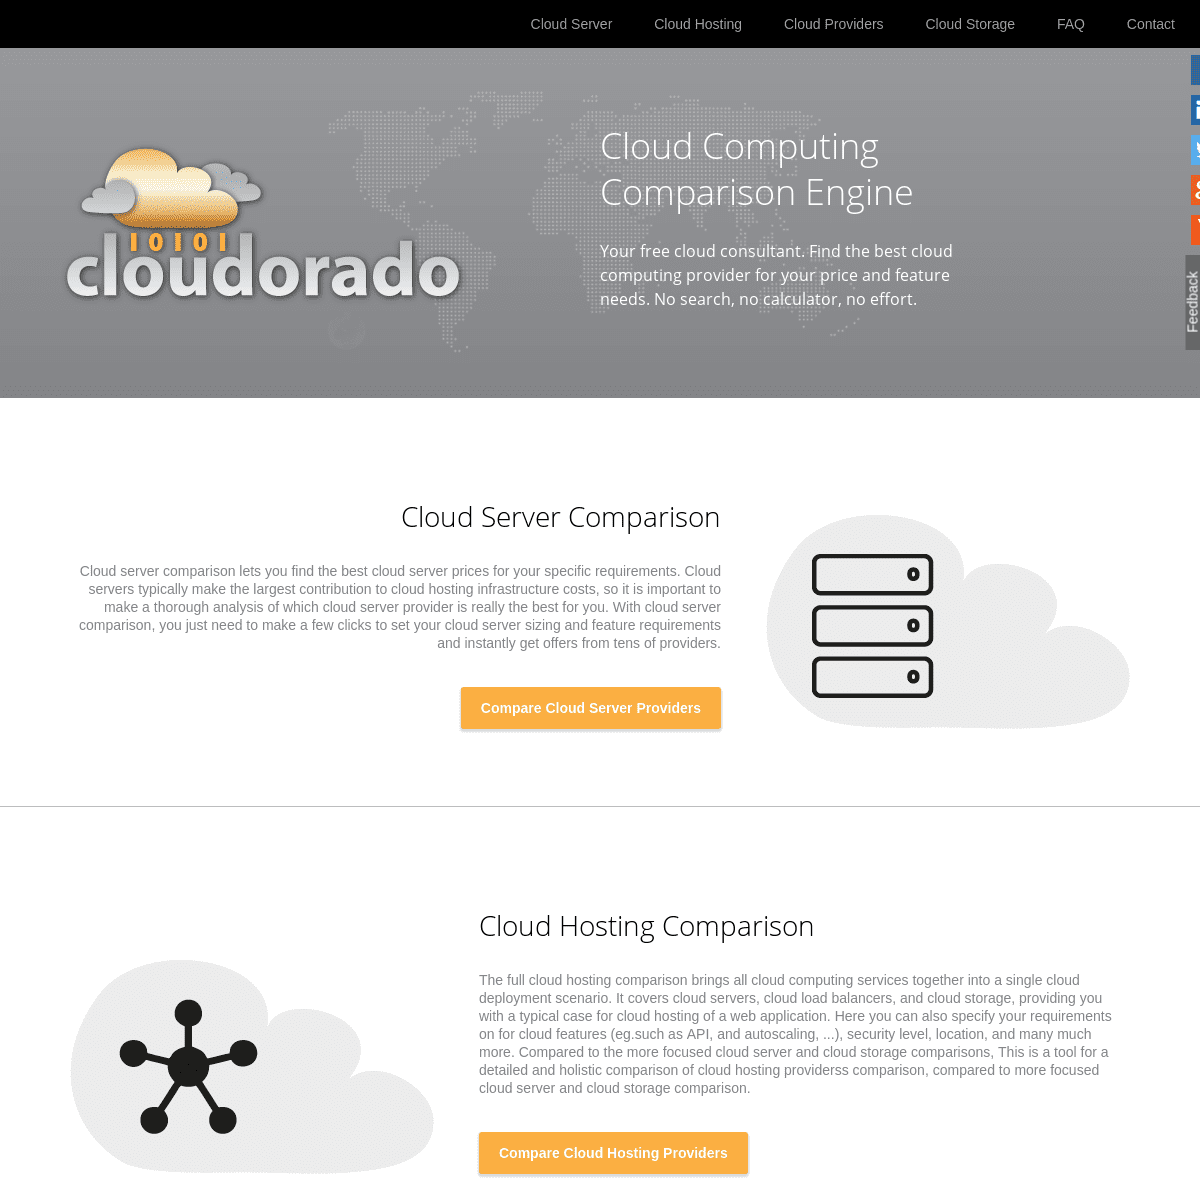 A complete backup of cloudorado.com